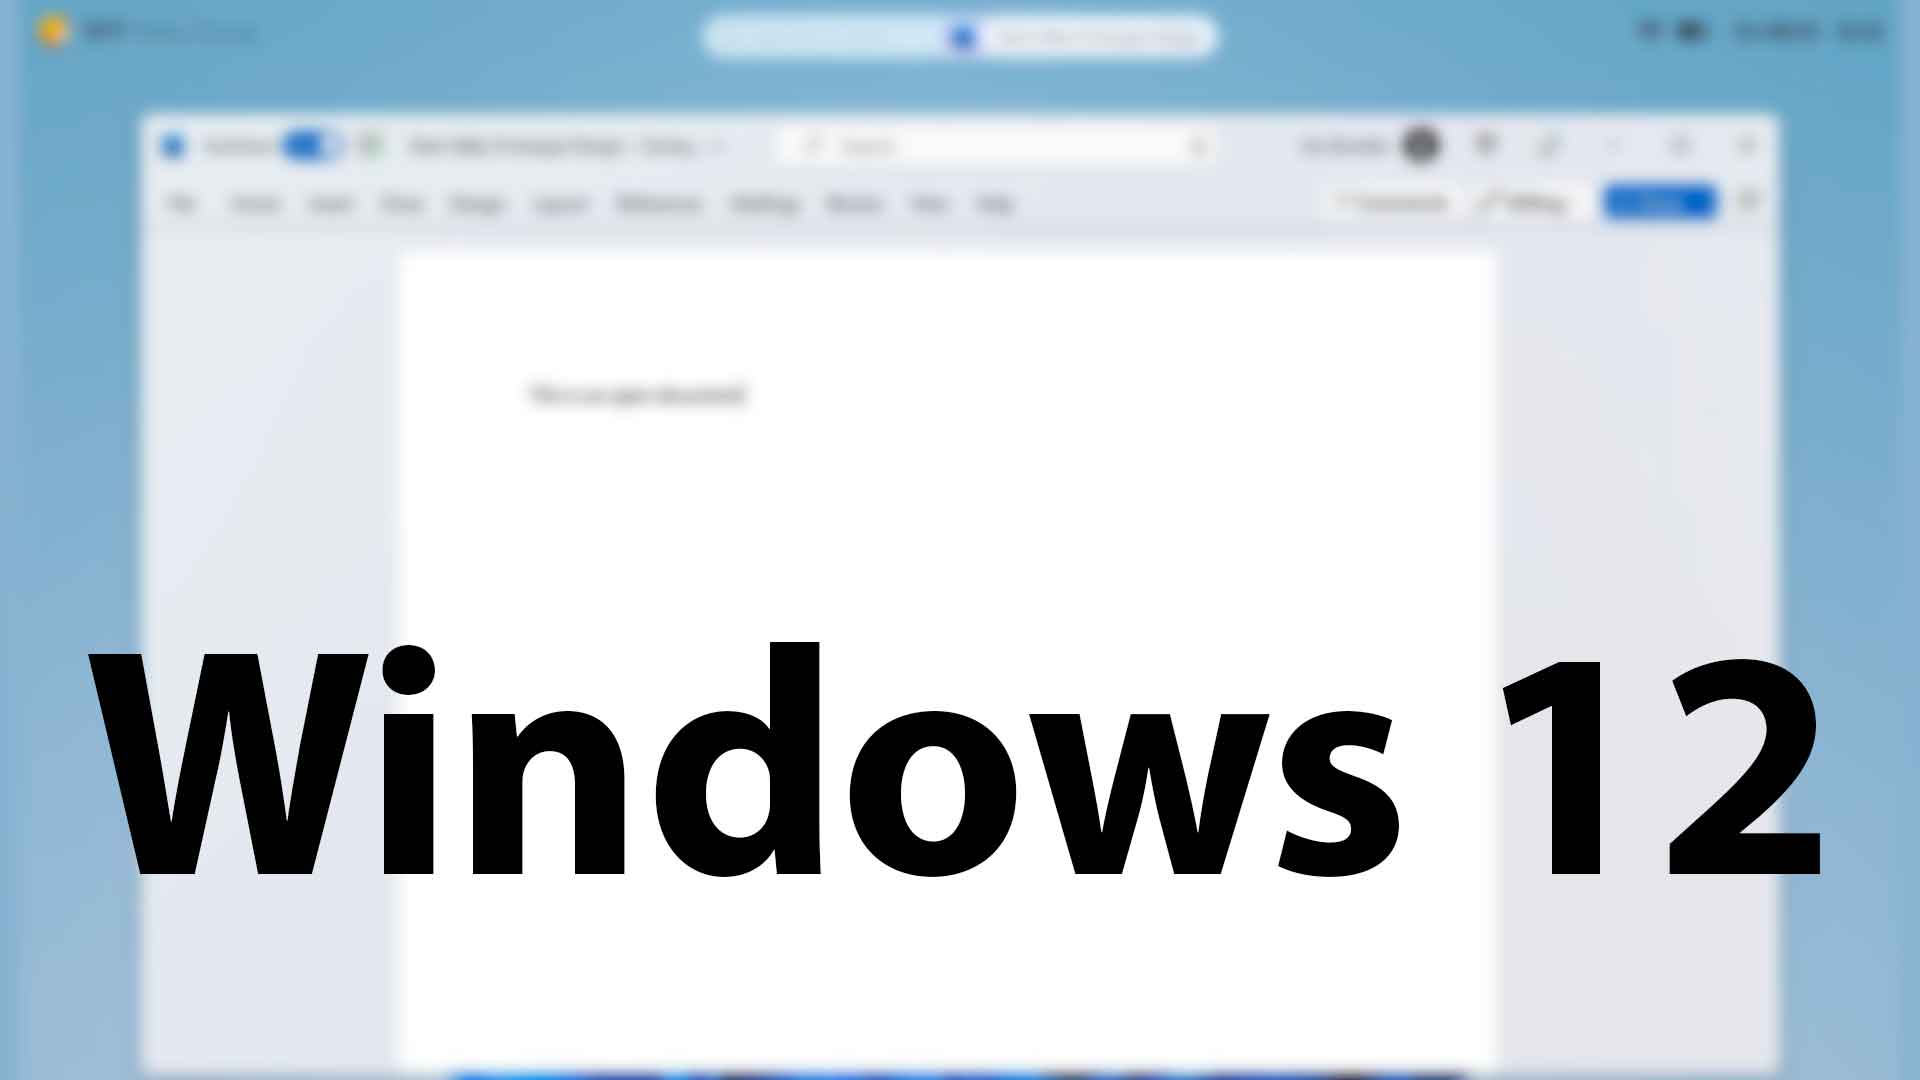 Windows 12 - nouvelle interface signée Microsoft (concept)